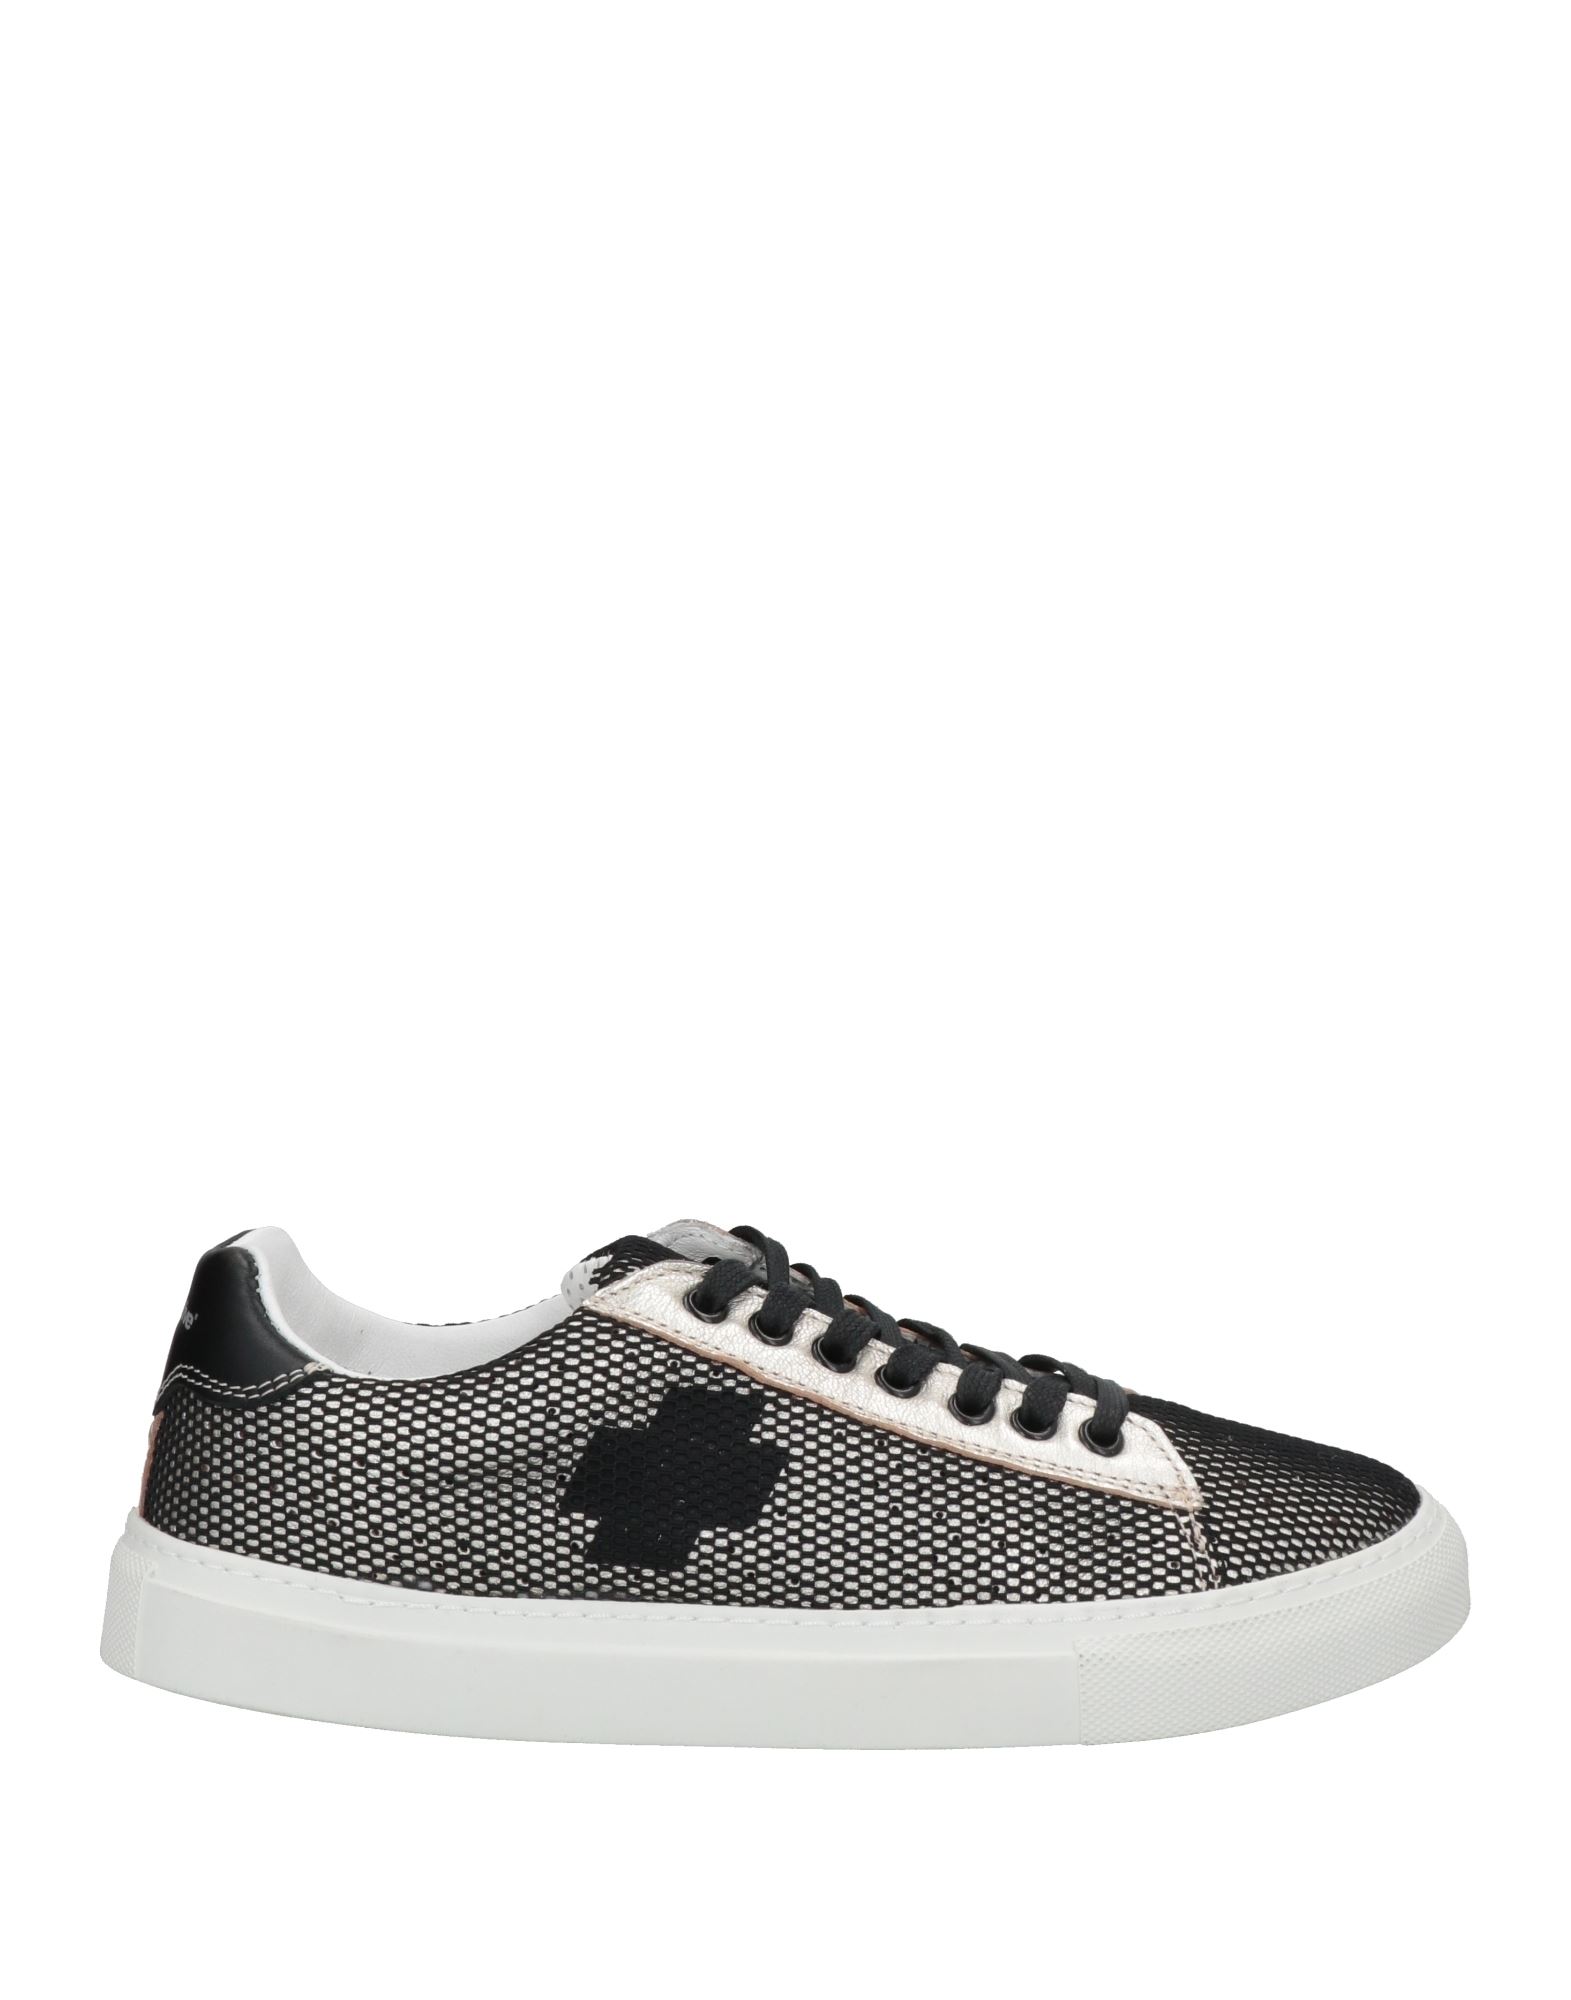 Bepositive Sneakers In Grey